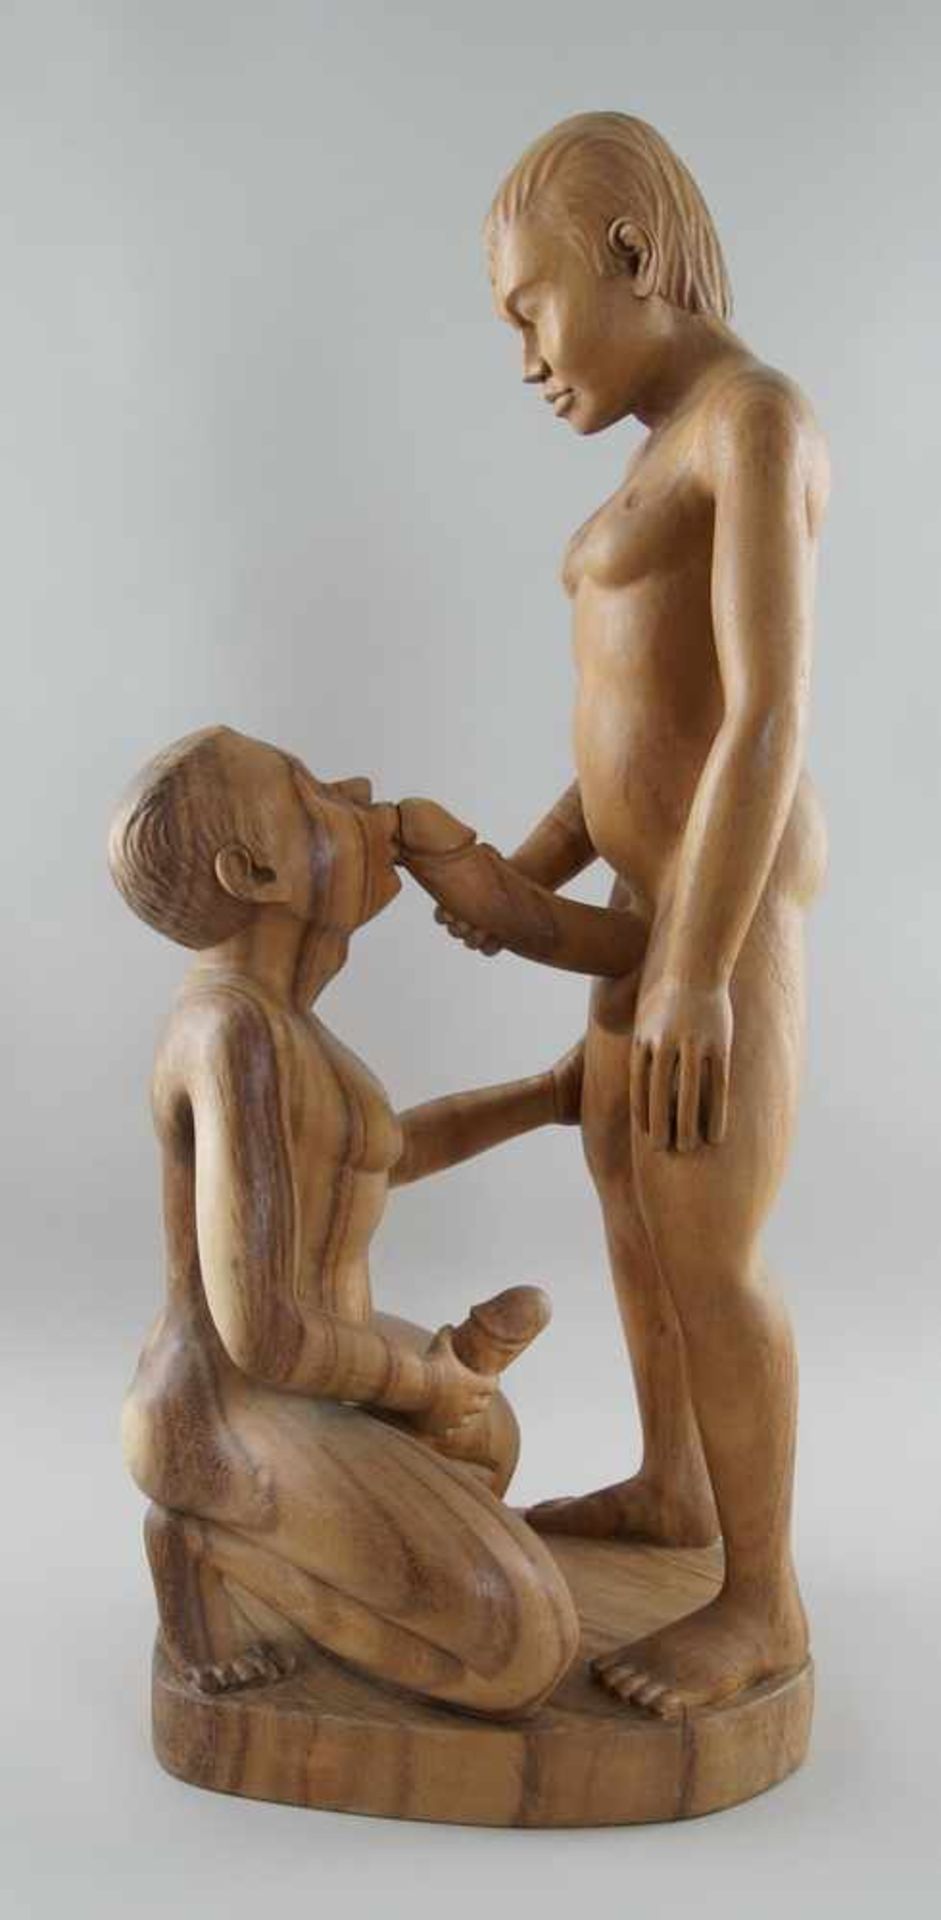 Männliches Paar / Erotische Akt Skulptur, Holz geschnitzt, Darstellung zweier nackterJünglinge